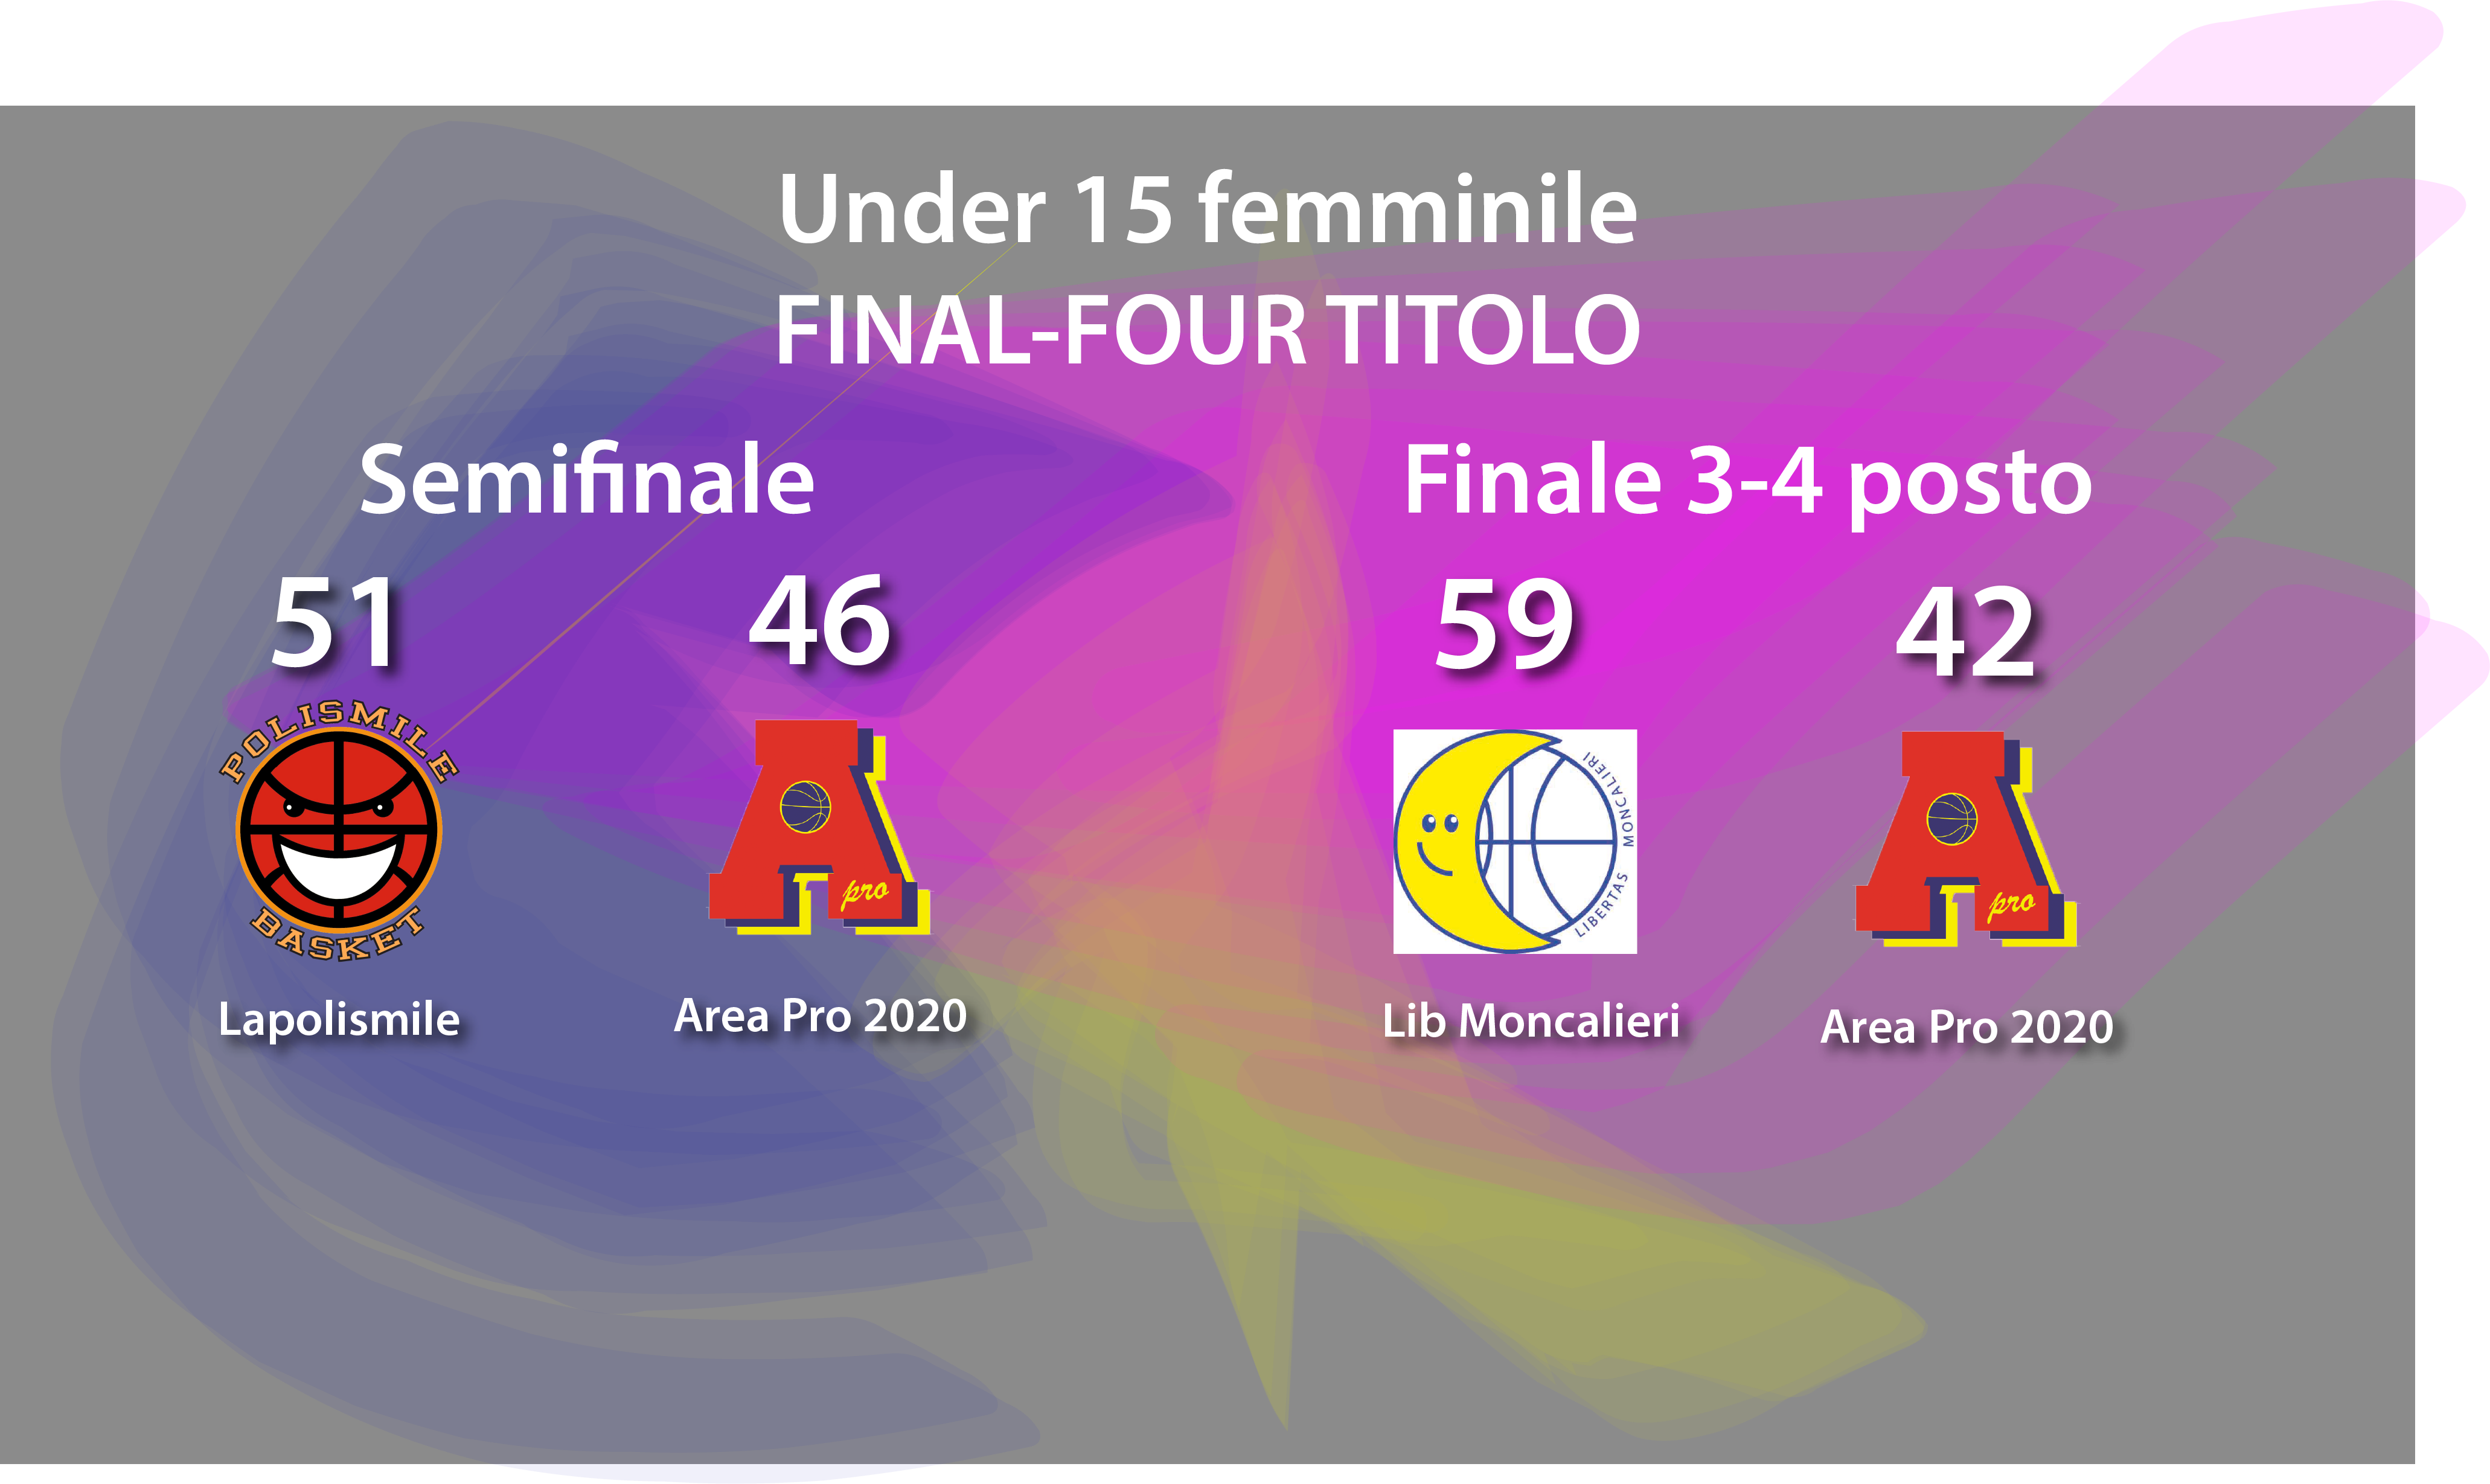 Under 15 Femminile final-four titolo : sfiorata la finale, a testa alta…quarto posto finale in Piemonte…Brave!!